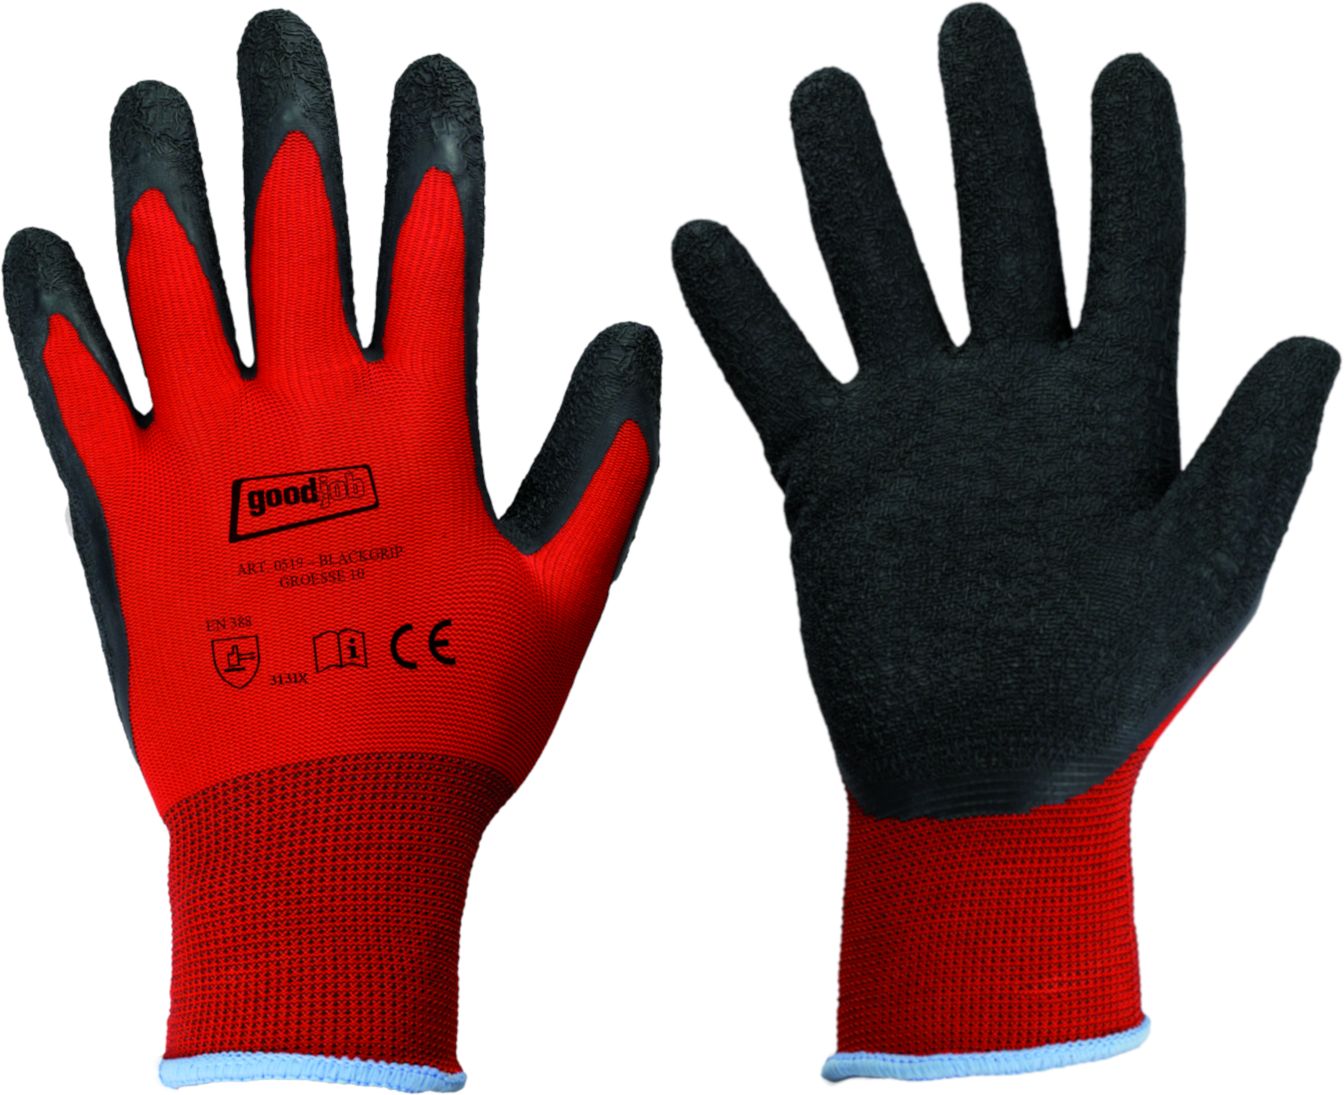 Black Grip 0519 Goodjob Handschuhe mit rutschfester Latex-Beschichtung